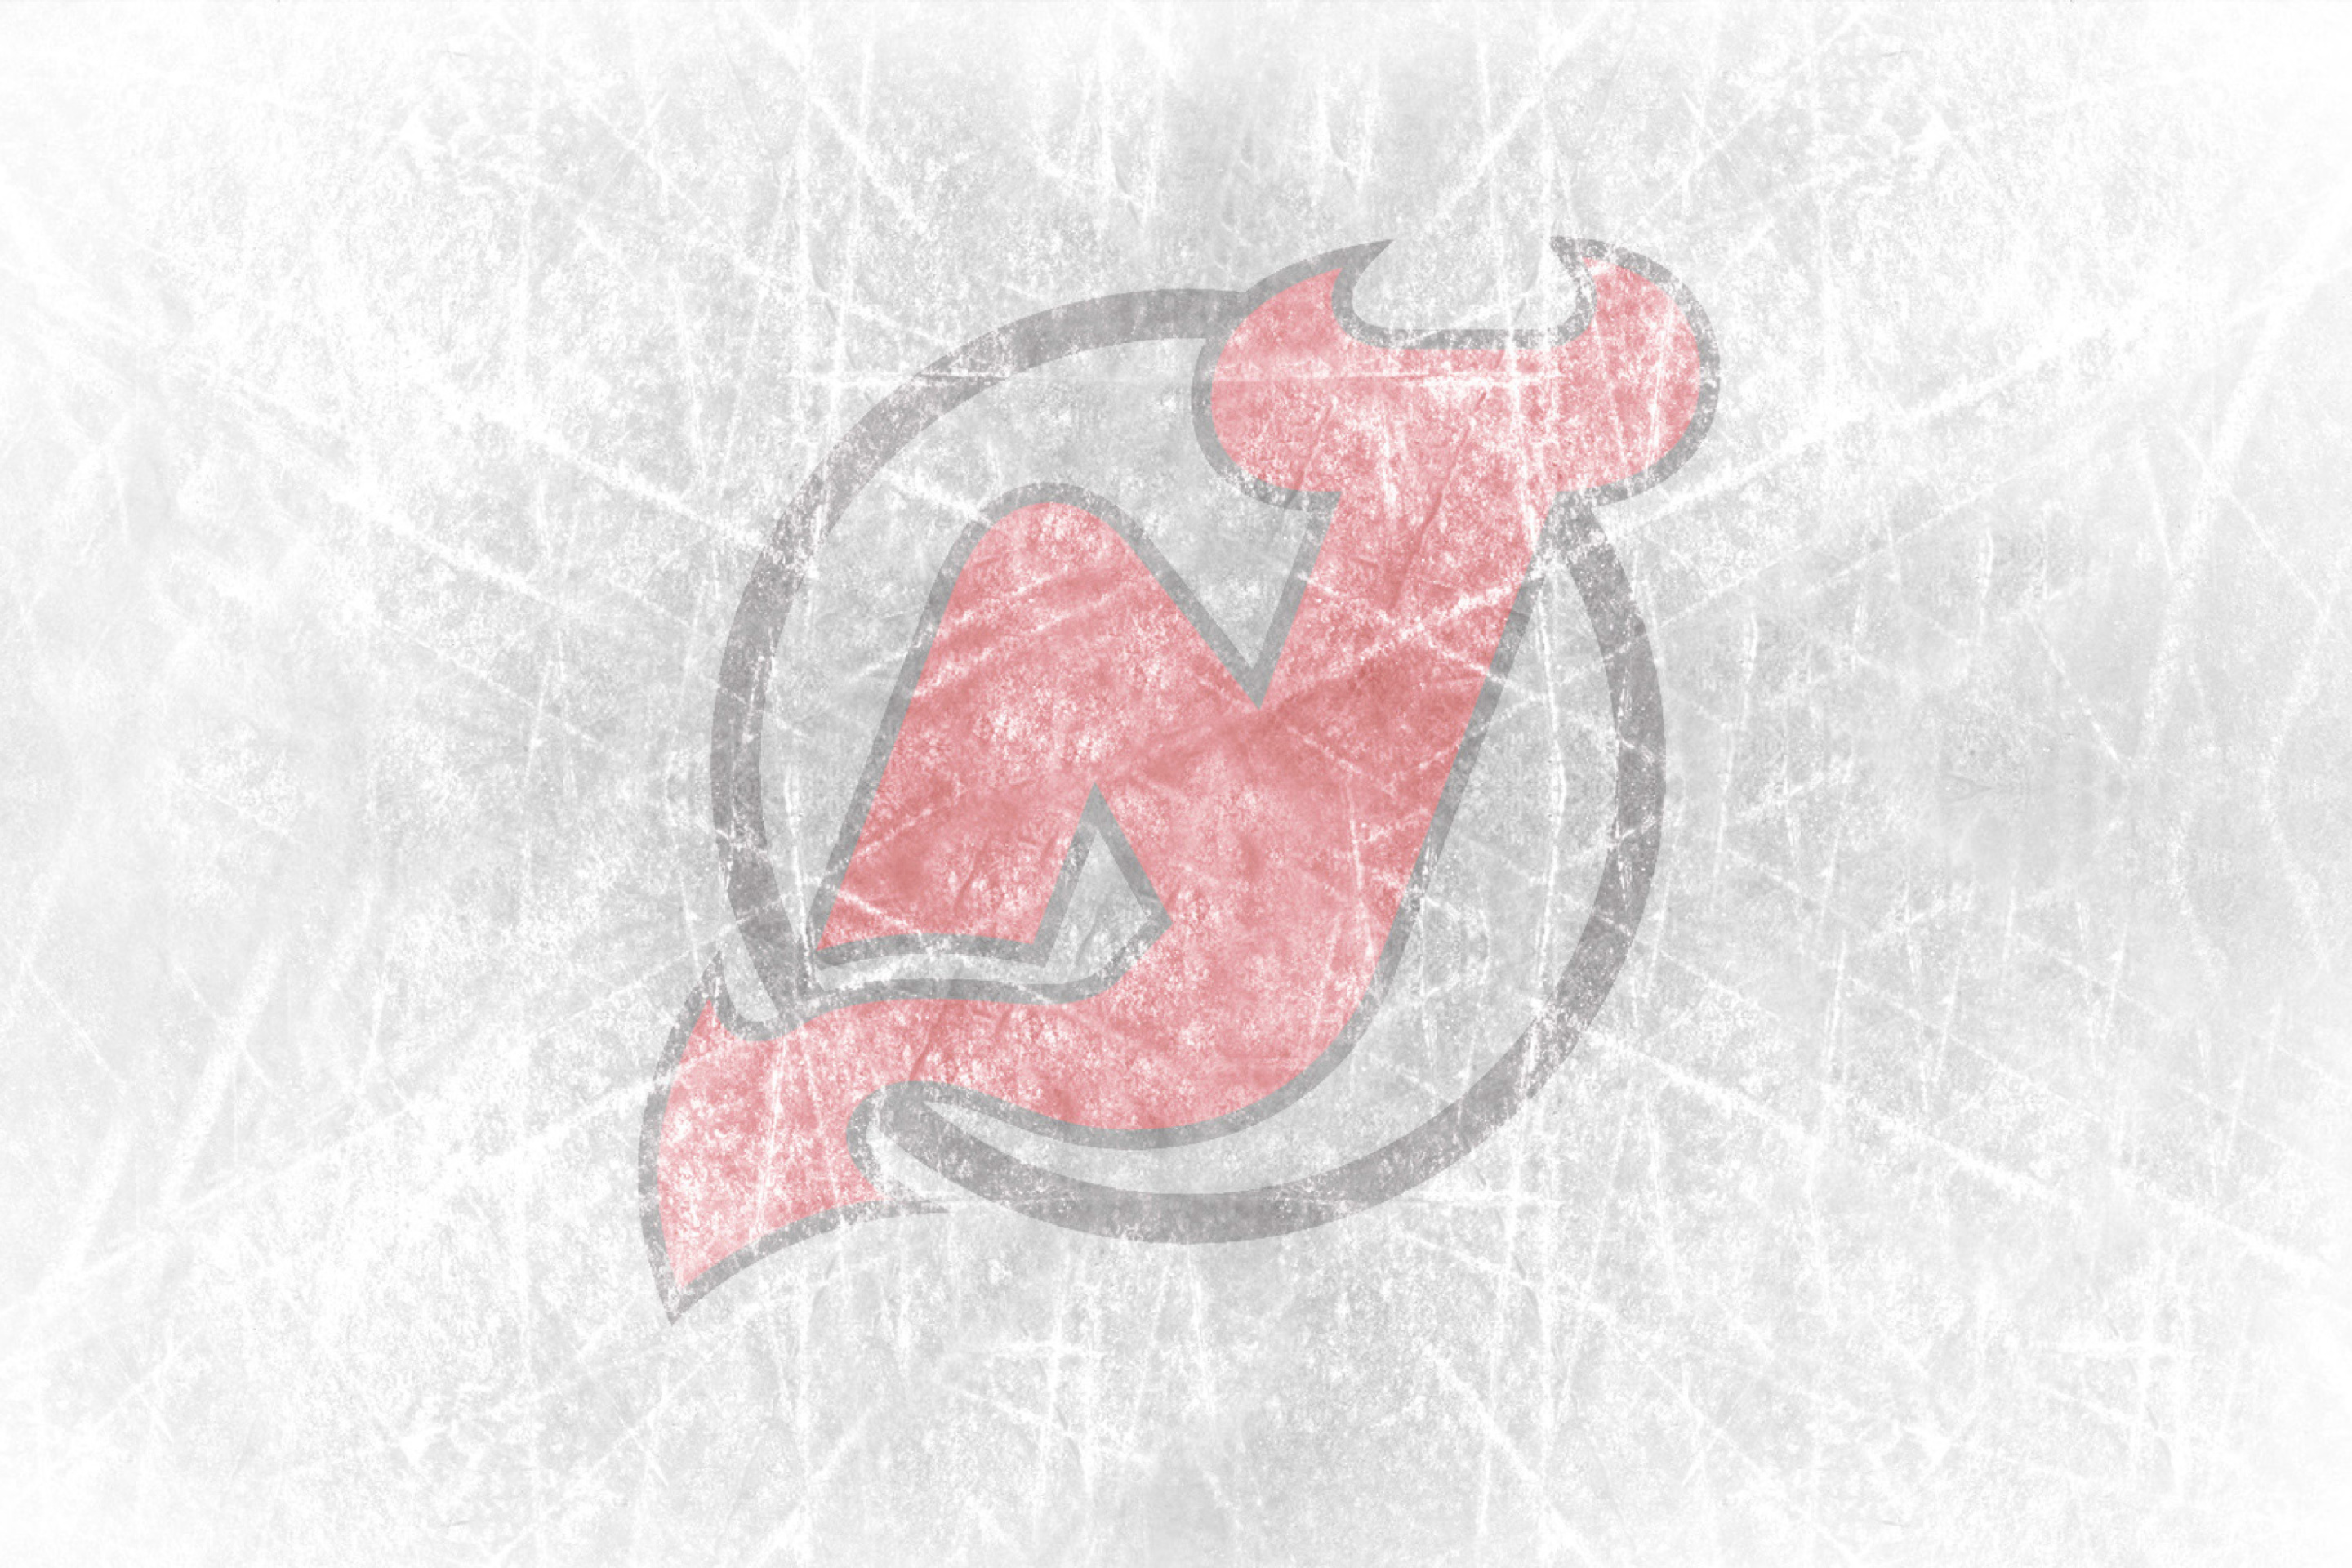 New Jersey Devils Hockey Team wallpaper 2880x1920